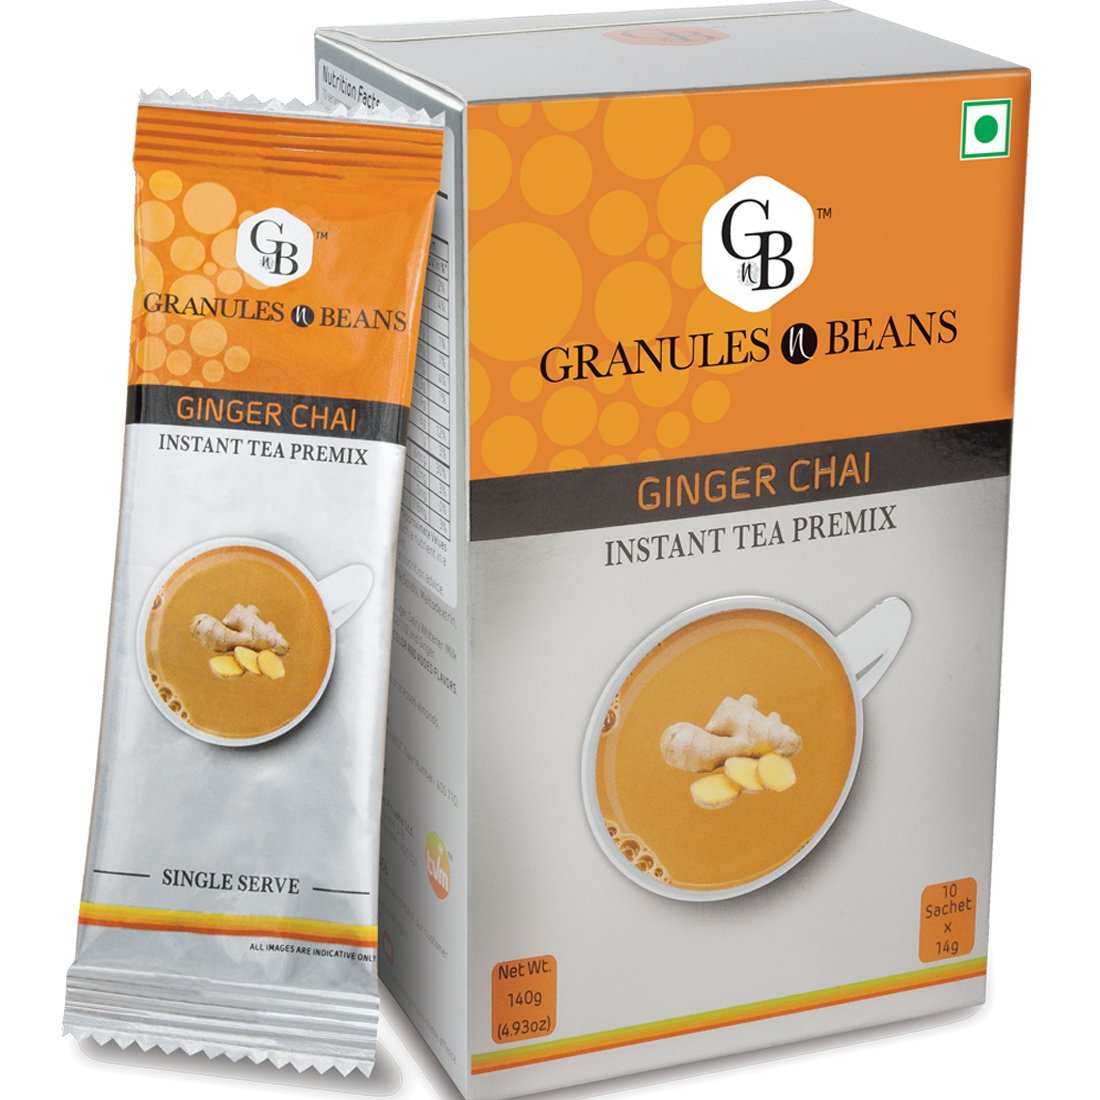 Granules n Beans Ginger Chai Instant Tea Premix - (10 Sachet x 14g = 140g) (Pack of 3)